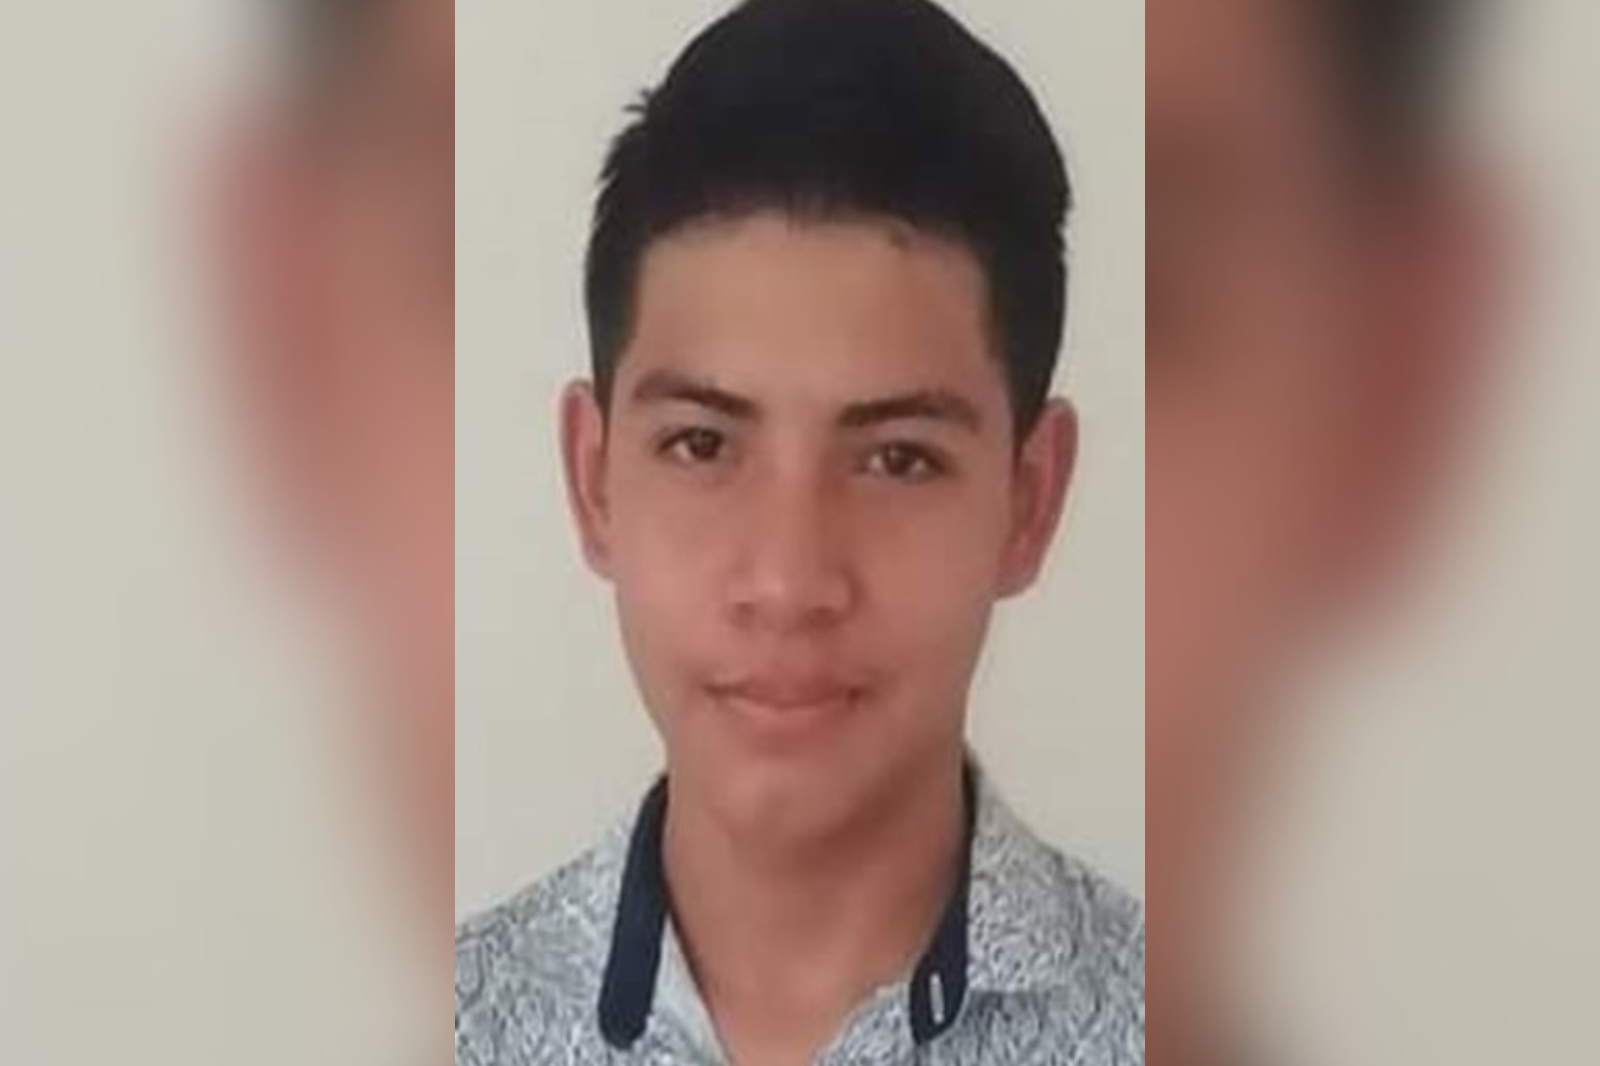 Alerta Ámber Quintana Roo: Buscan a Erick Adrián Matos Serrano desaparecido en Cancún